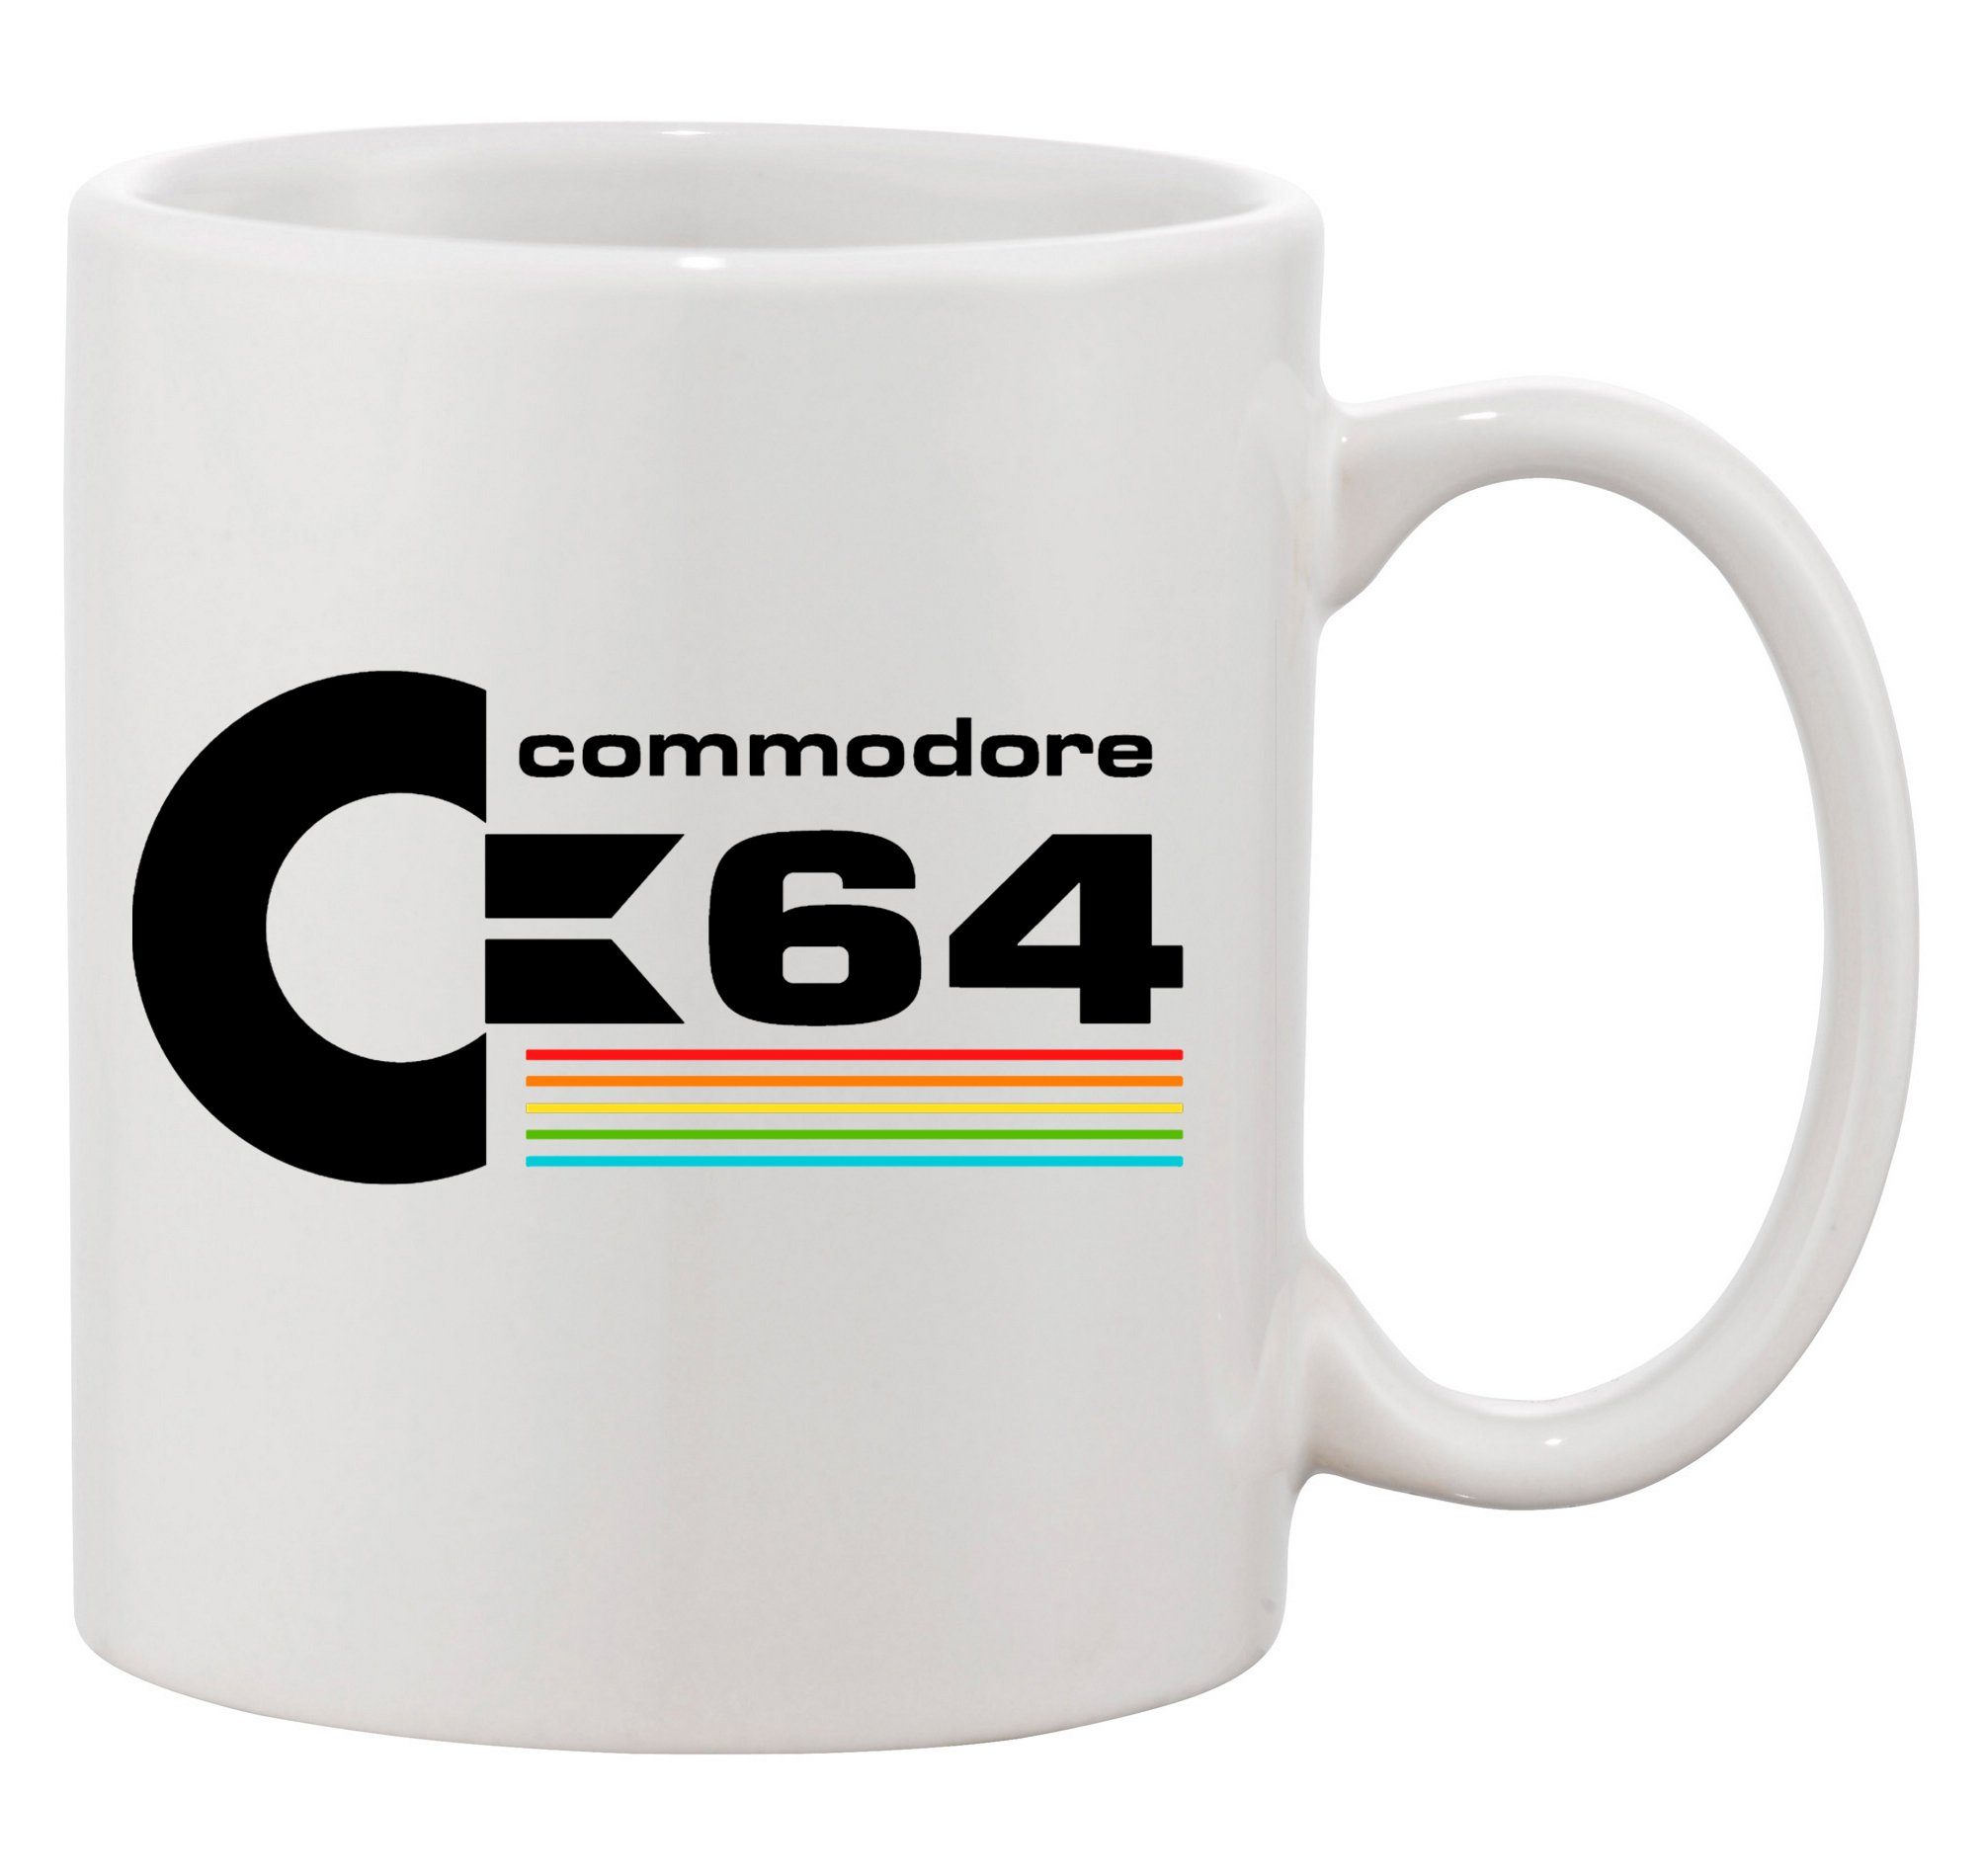 Blondie & Brownie Tasse Commodore 64 Konsole Amige Nintendo in Schwarz und weiß, Keramik